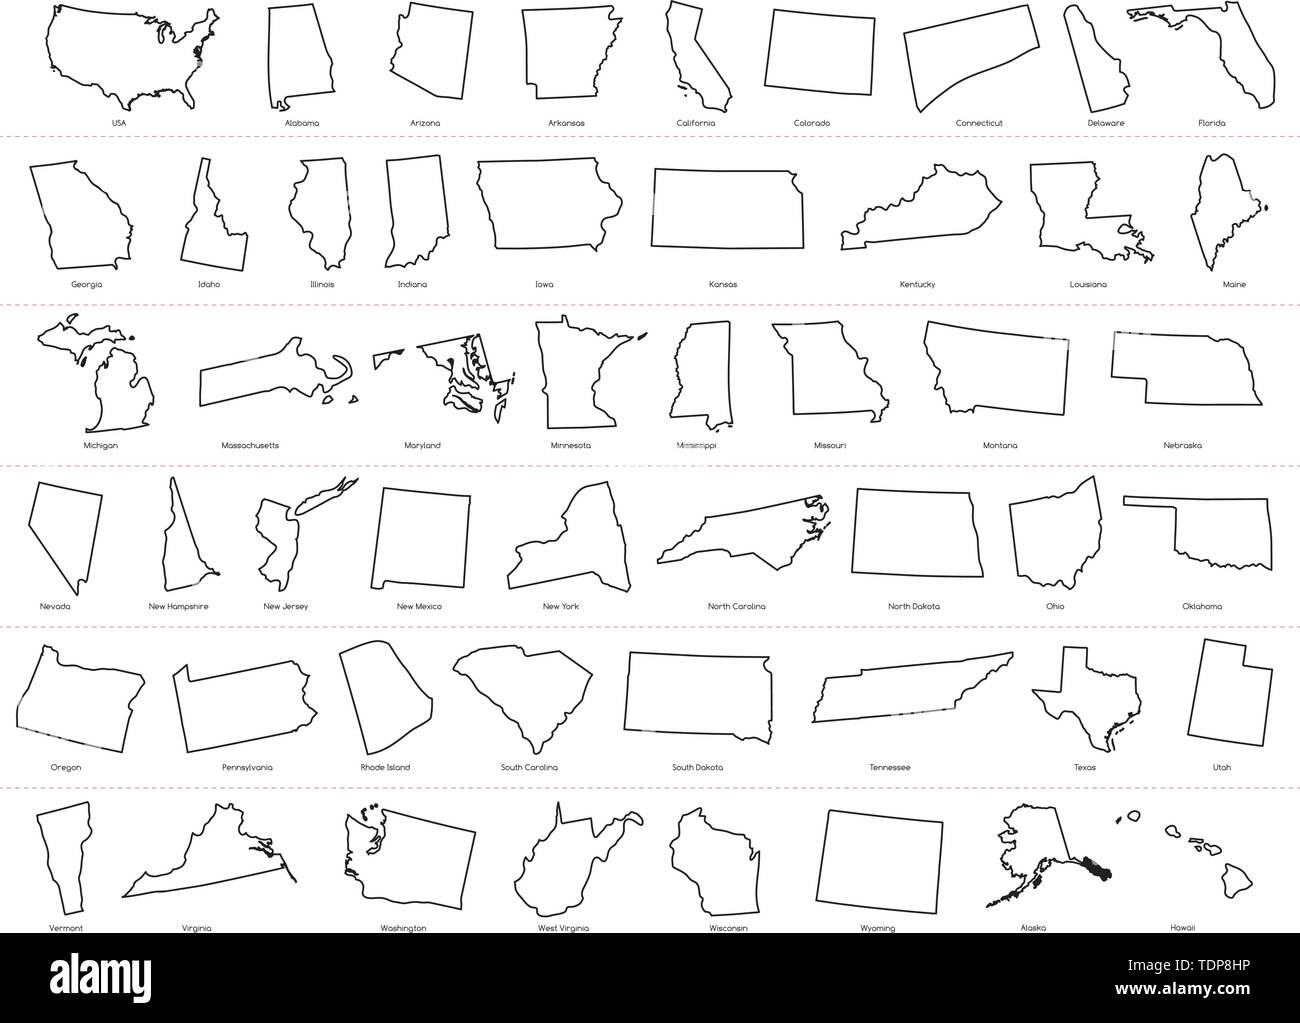 Stati uni damerica cartina muta foto e immagini stock in bianco e nero